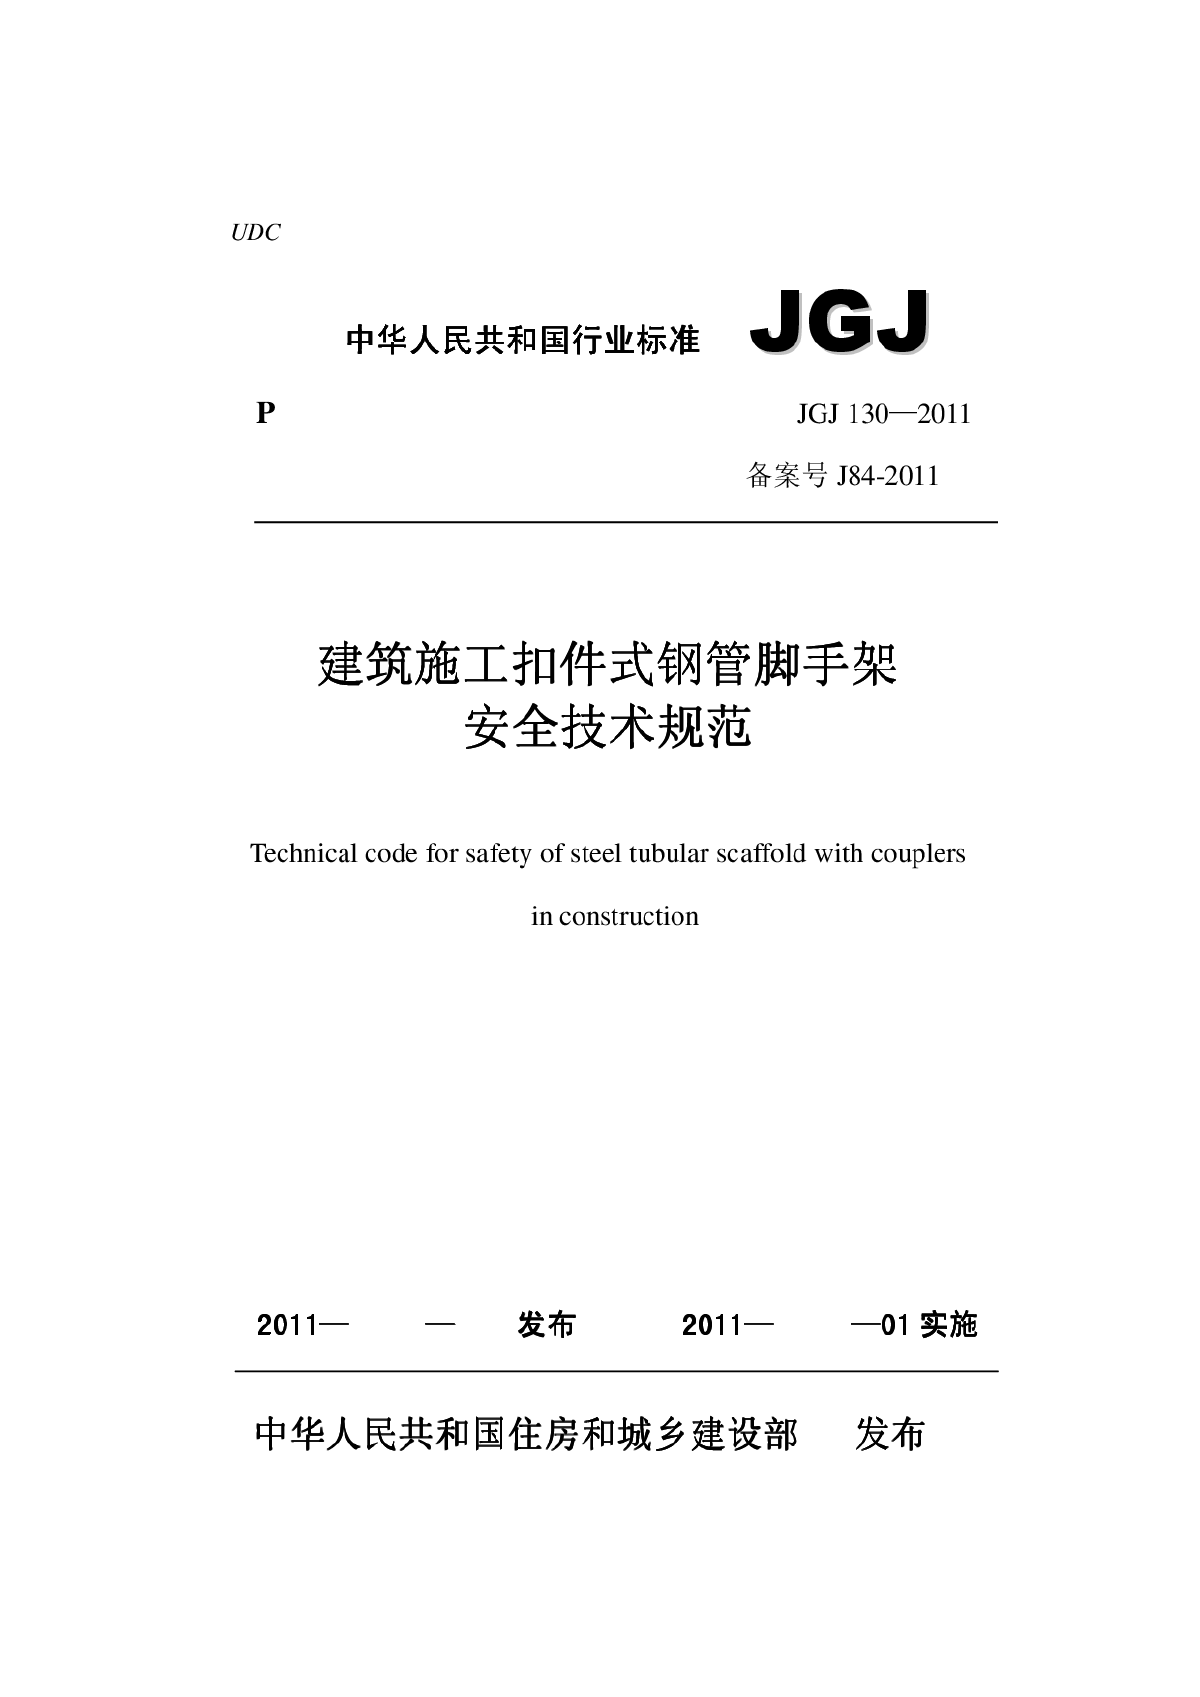 脚手架2011新规范 JGJ130-2011 